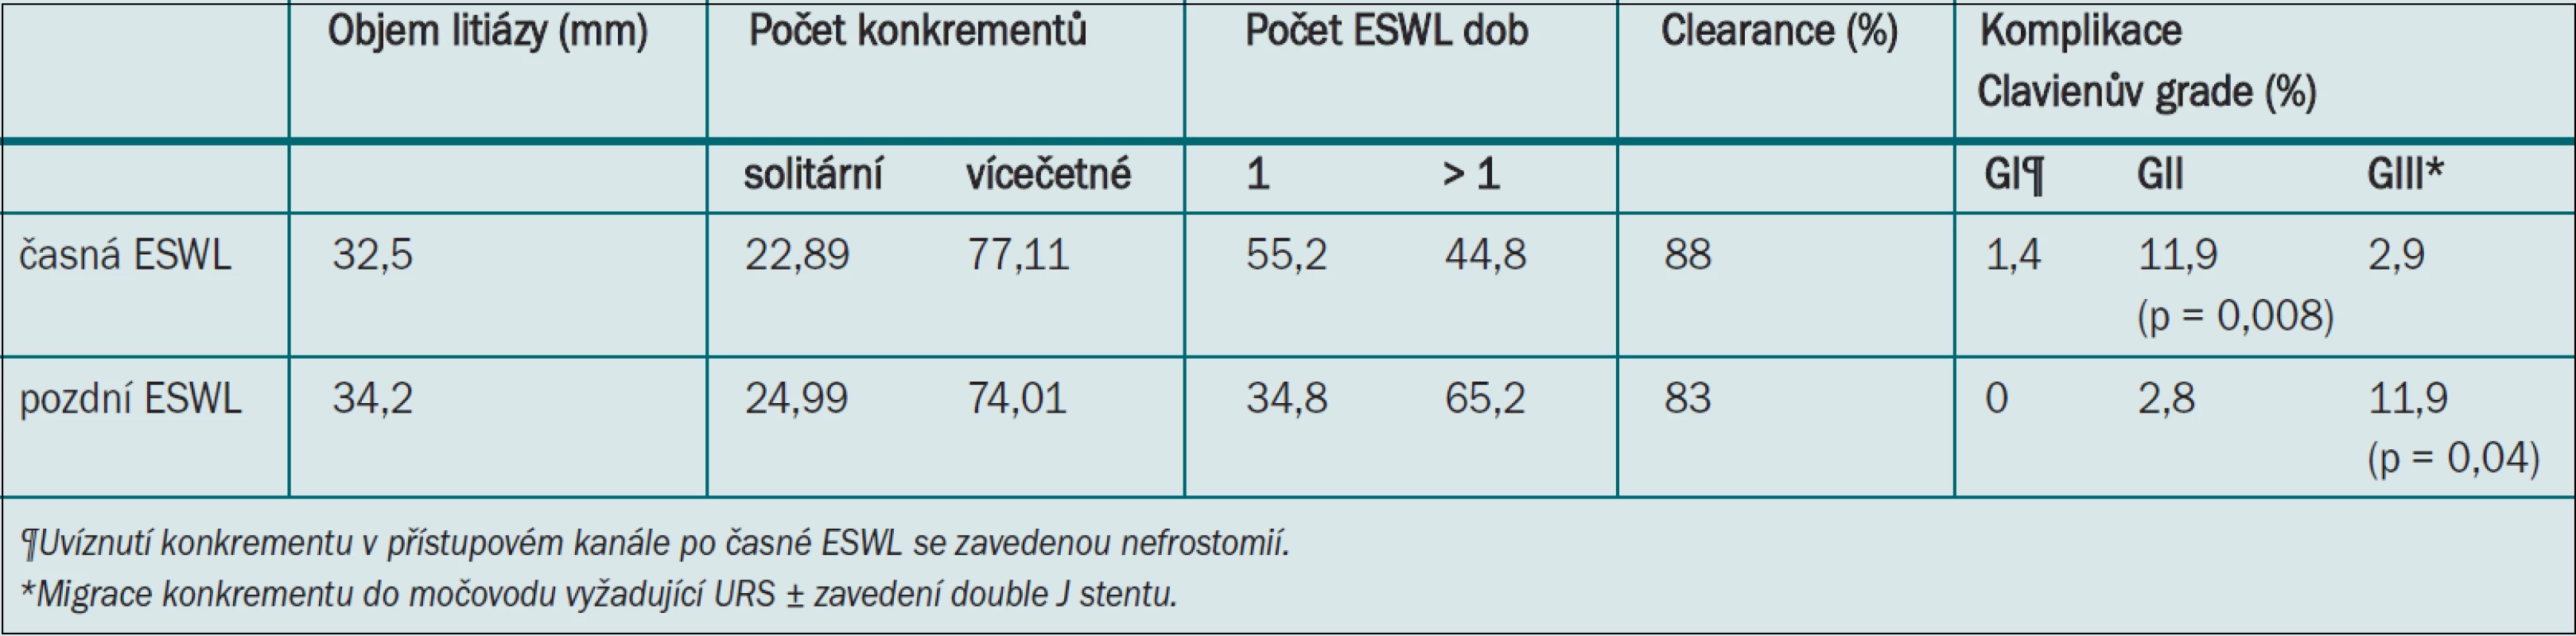 Výsledky u pacientů podstupujících časnou vs pozdní ESWL po primární PCNL.